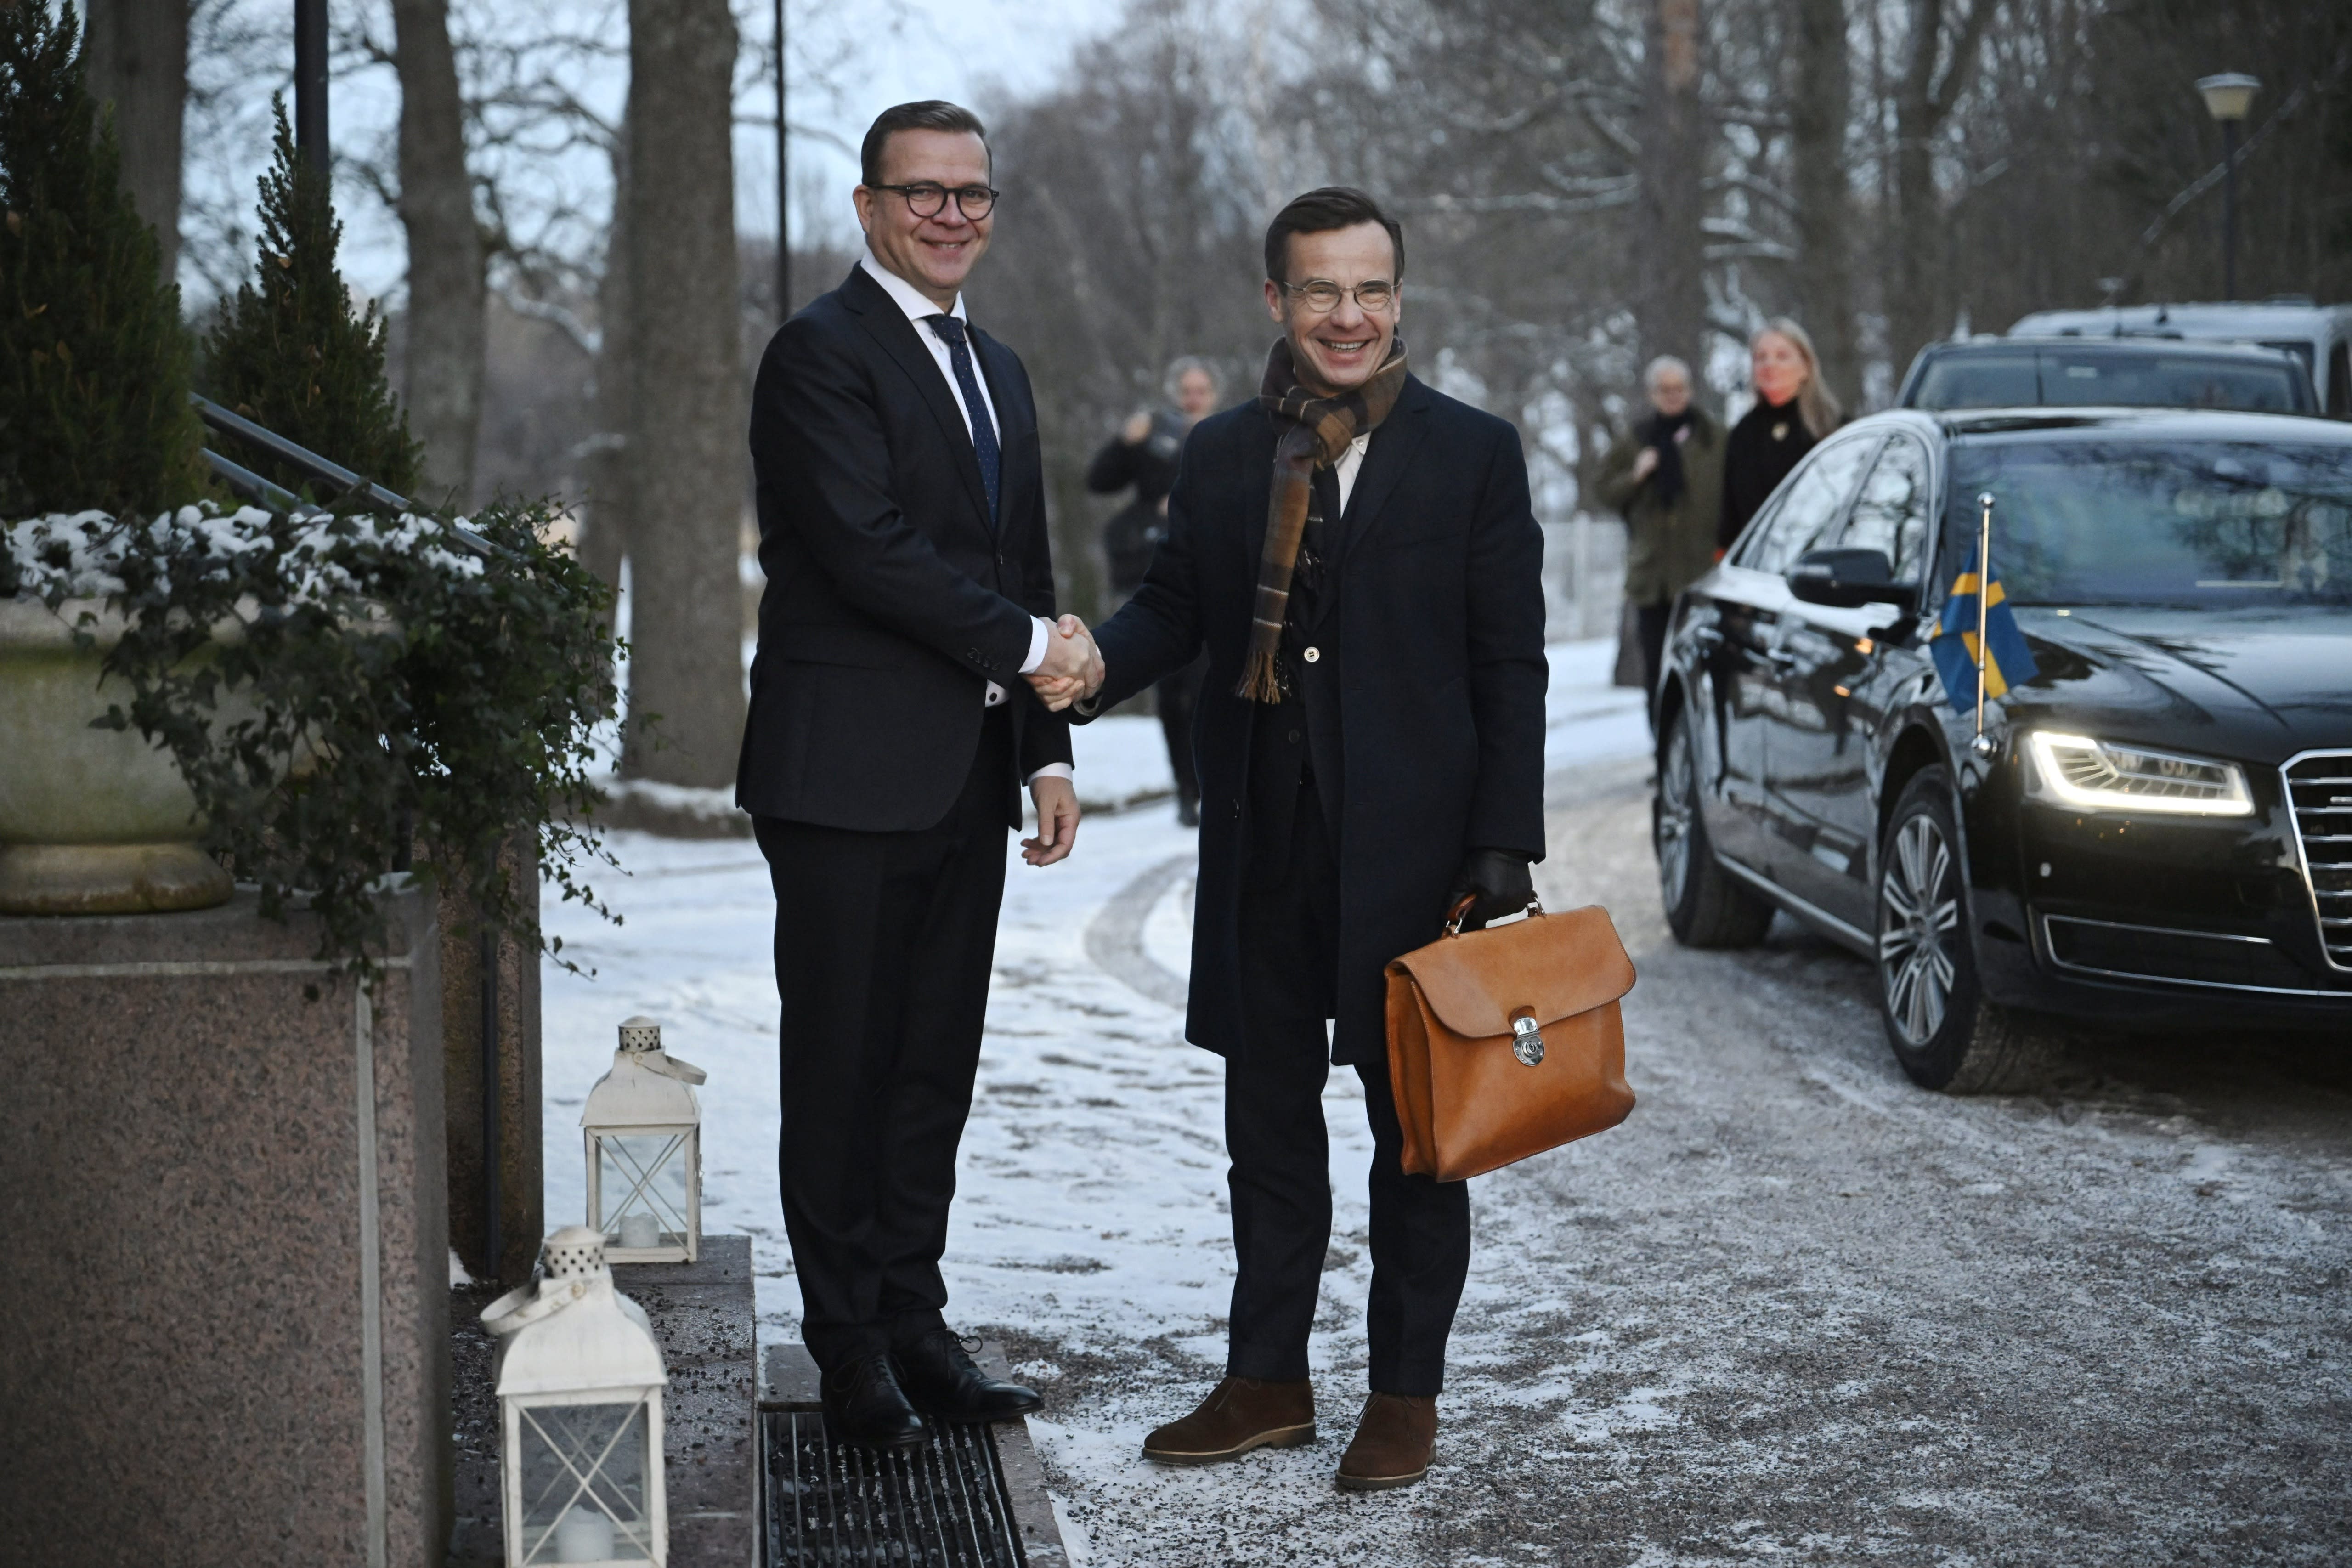 Suecia está dispuesta a ayudar a Finlandia en cuestiones fronterizas, dice el primer ministro Kristersson